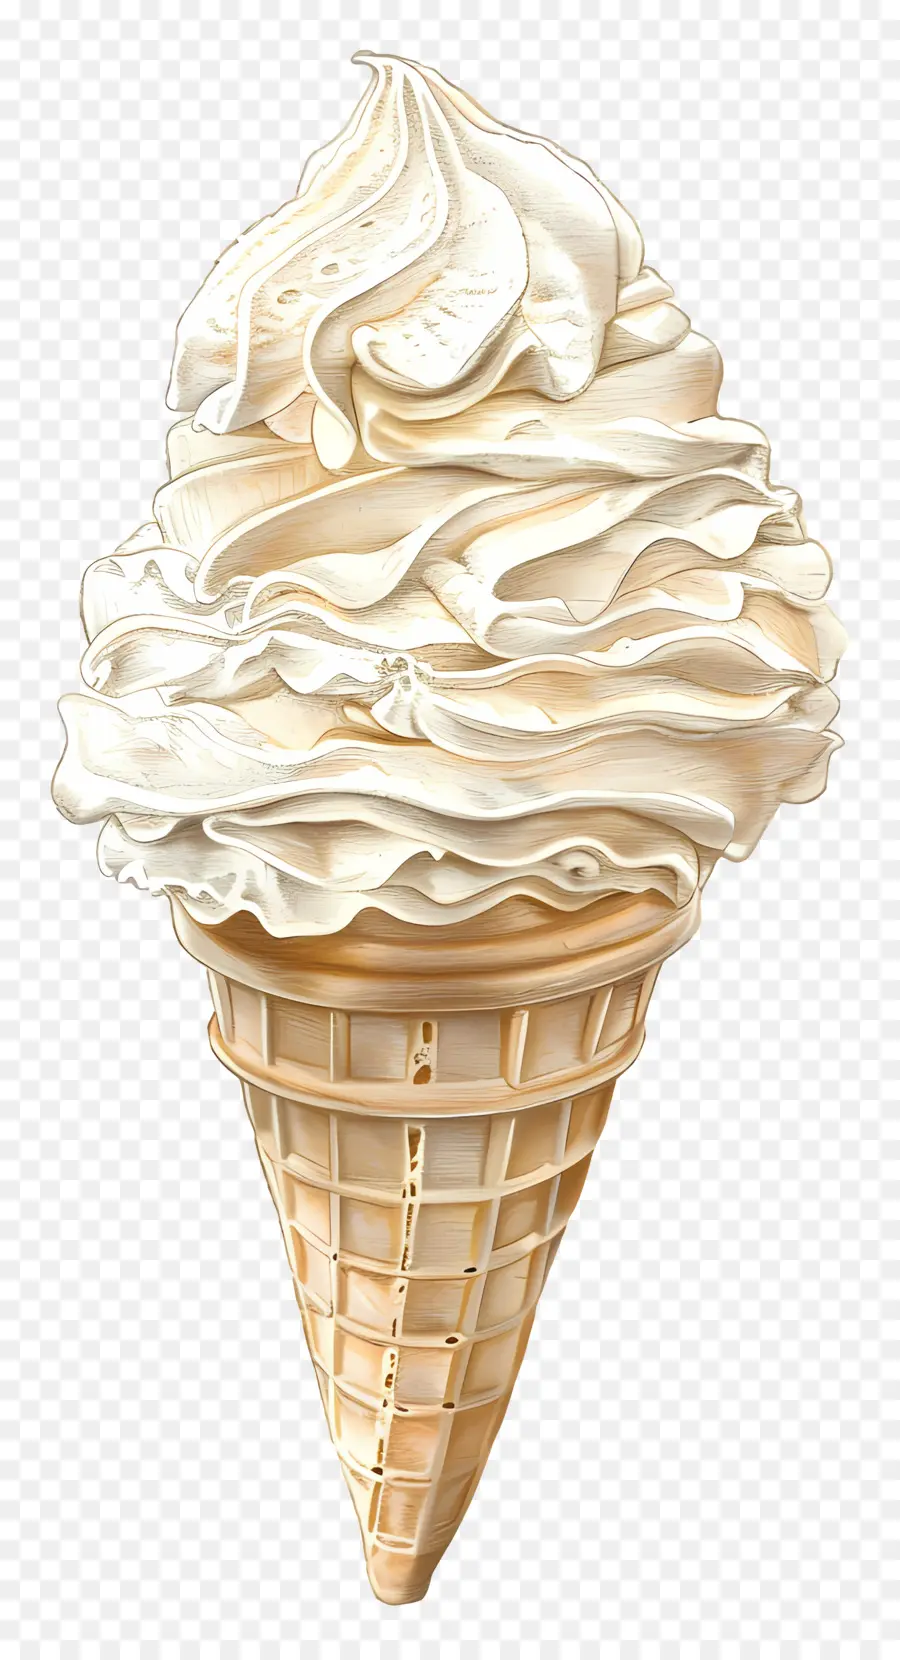 vanilla ice cream ice cream cone vanilla waffle cone creamy